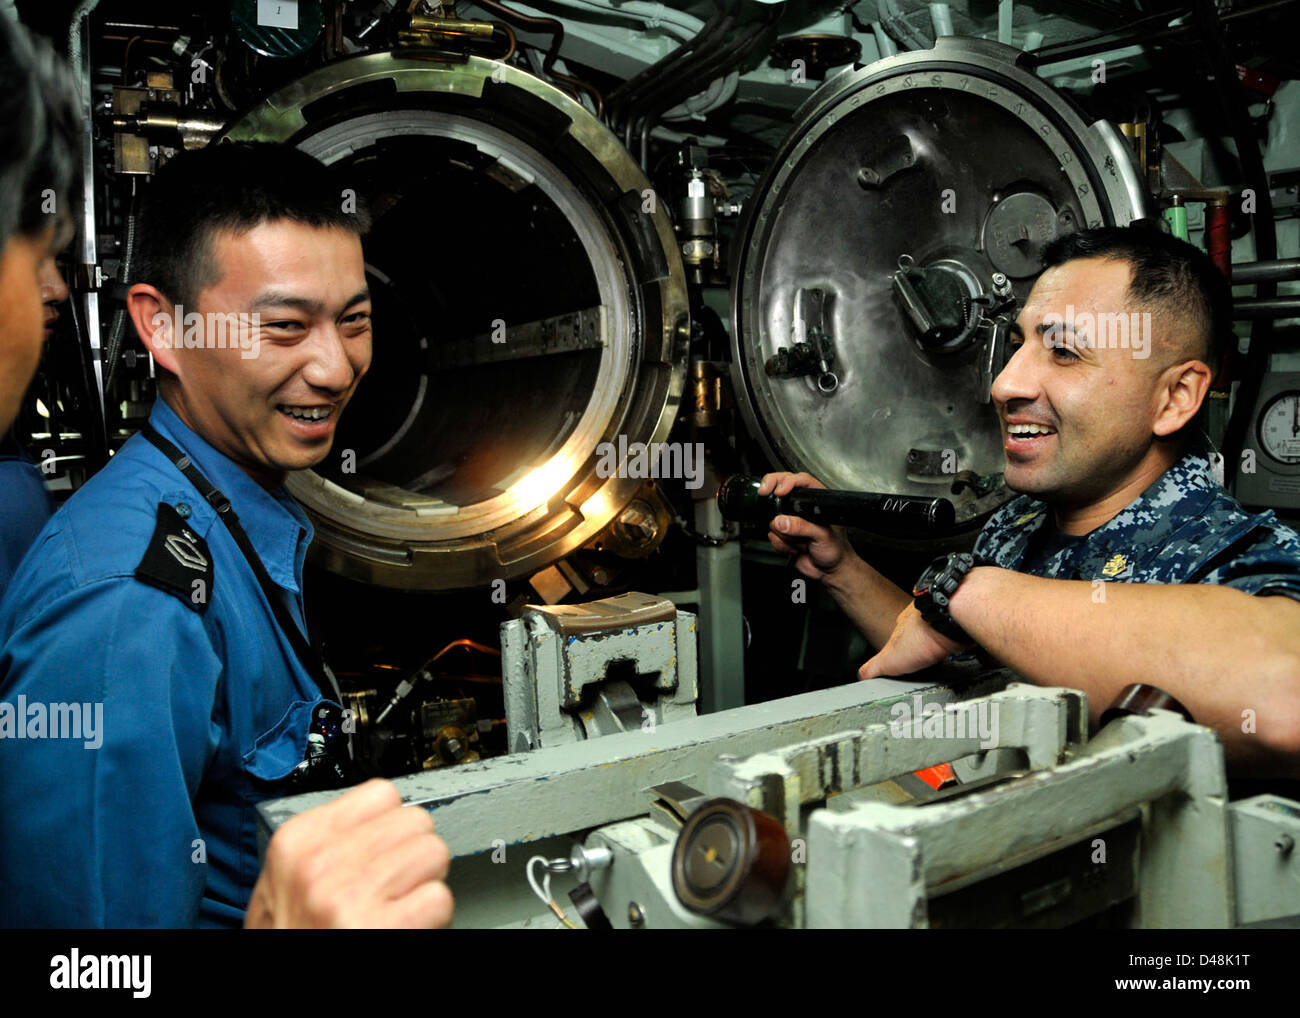 USS Greeneville hosts Japanese sailors. Stock Photo